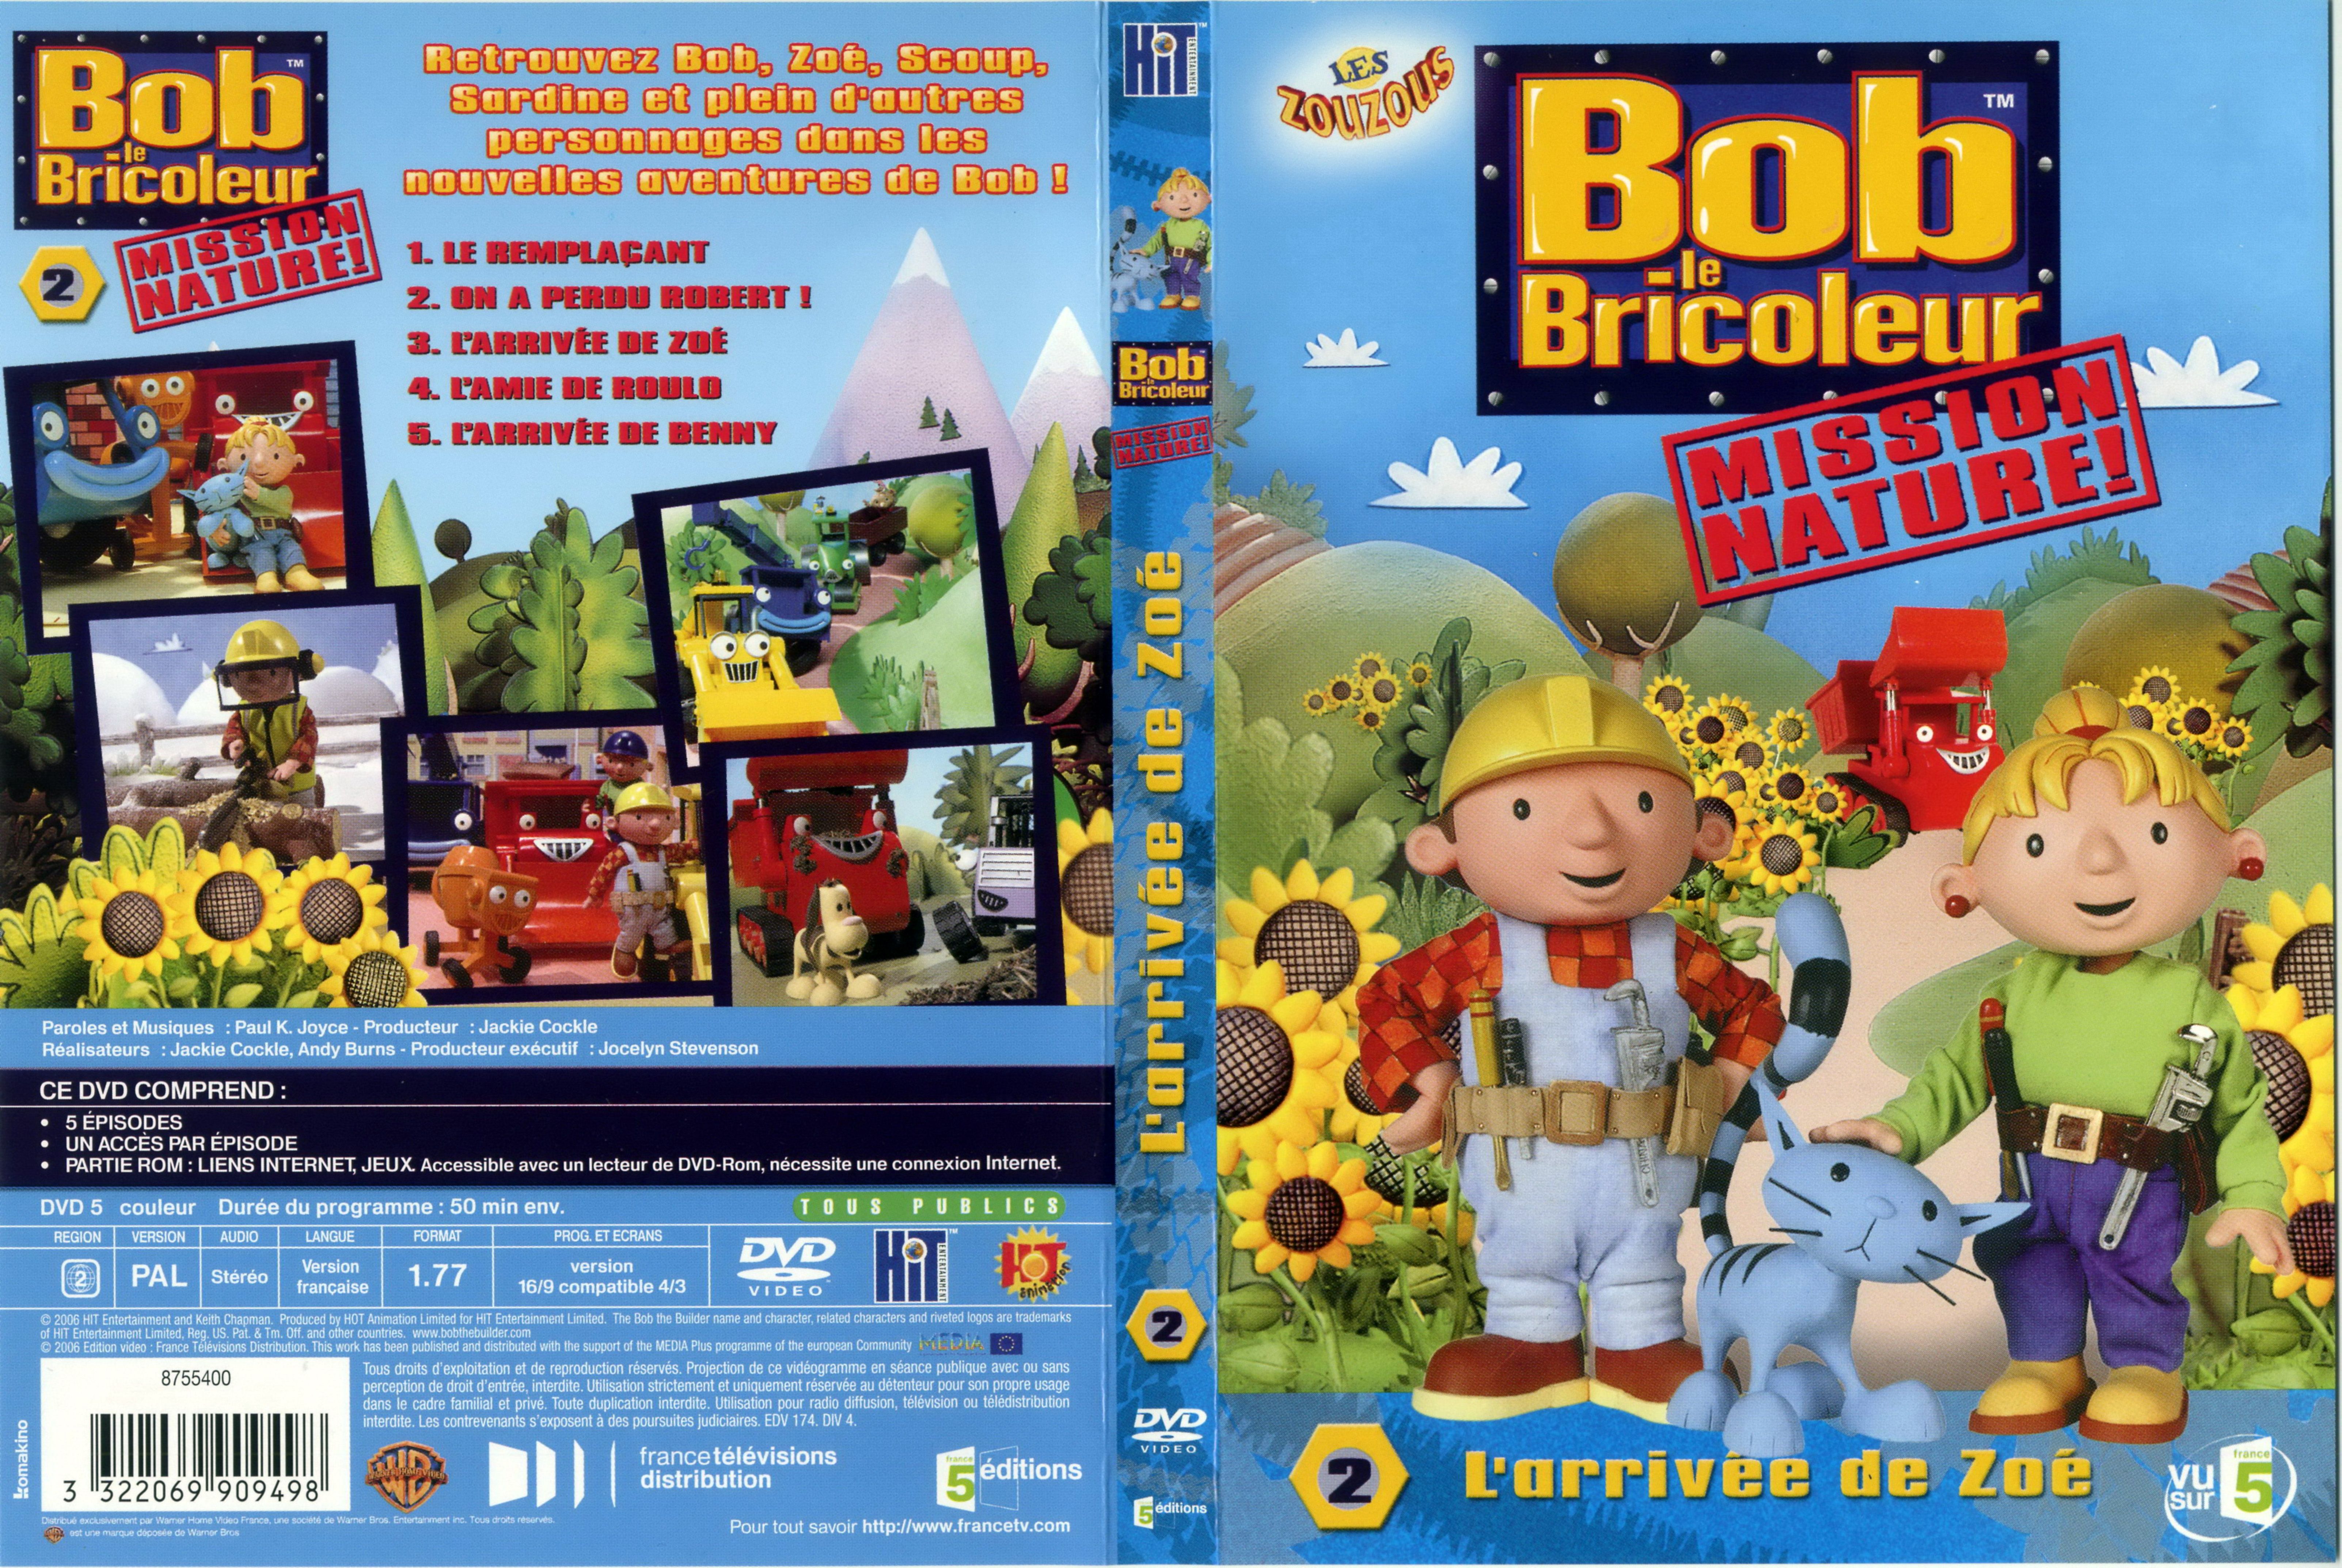 Jaquette DVD Bob le bricoleur Mission nature vol 2